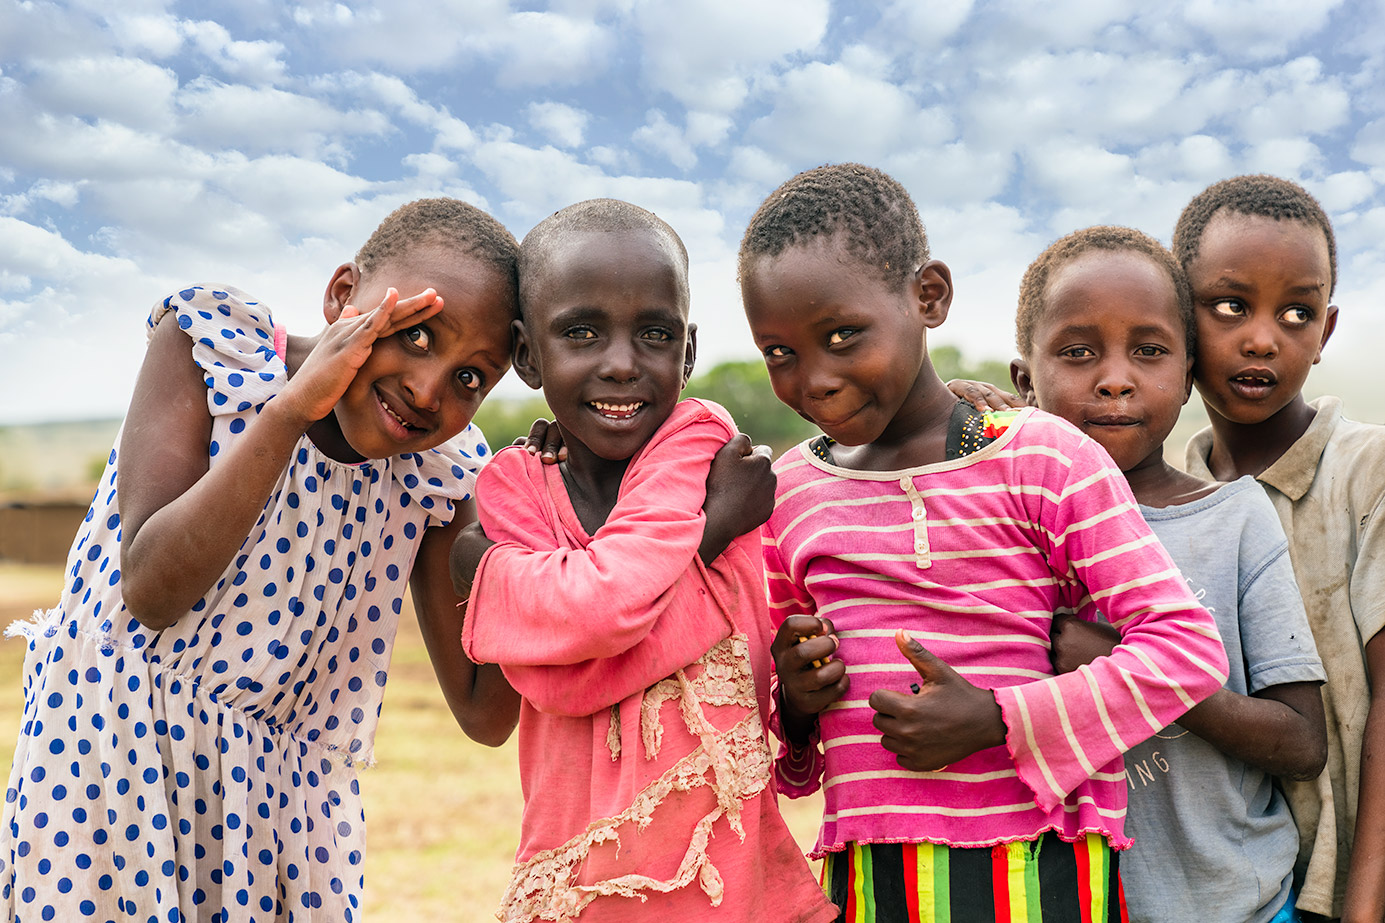 Massai Kinder fotografiert auf einer Fotoreise in Kenia von Benny Rebel